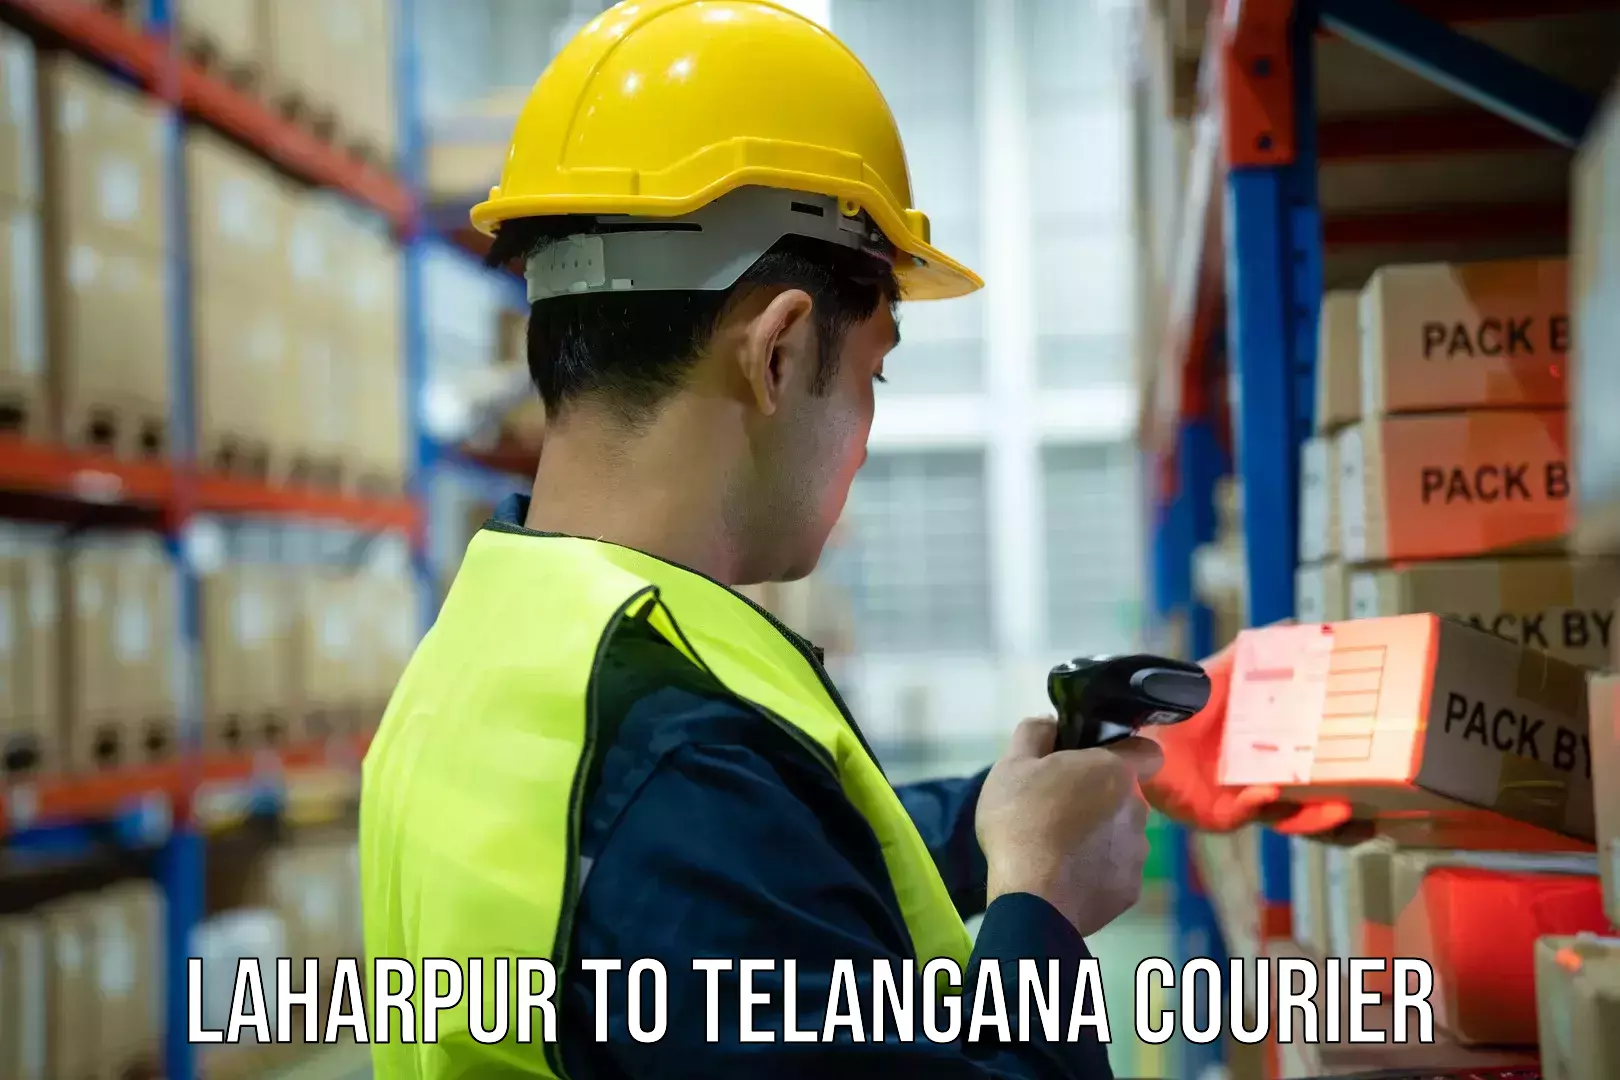 Premium courier solutions Laharpur to Rudrangi